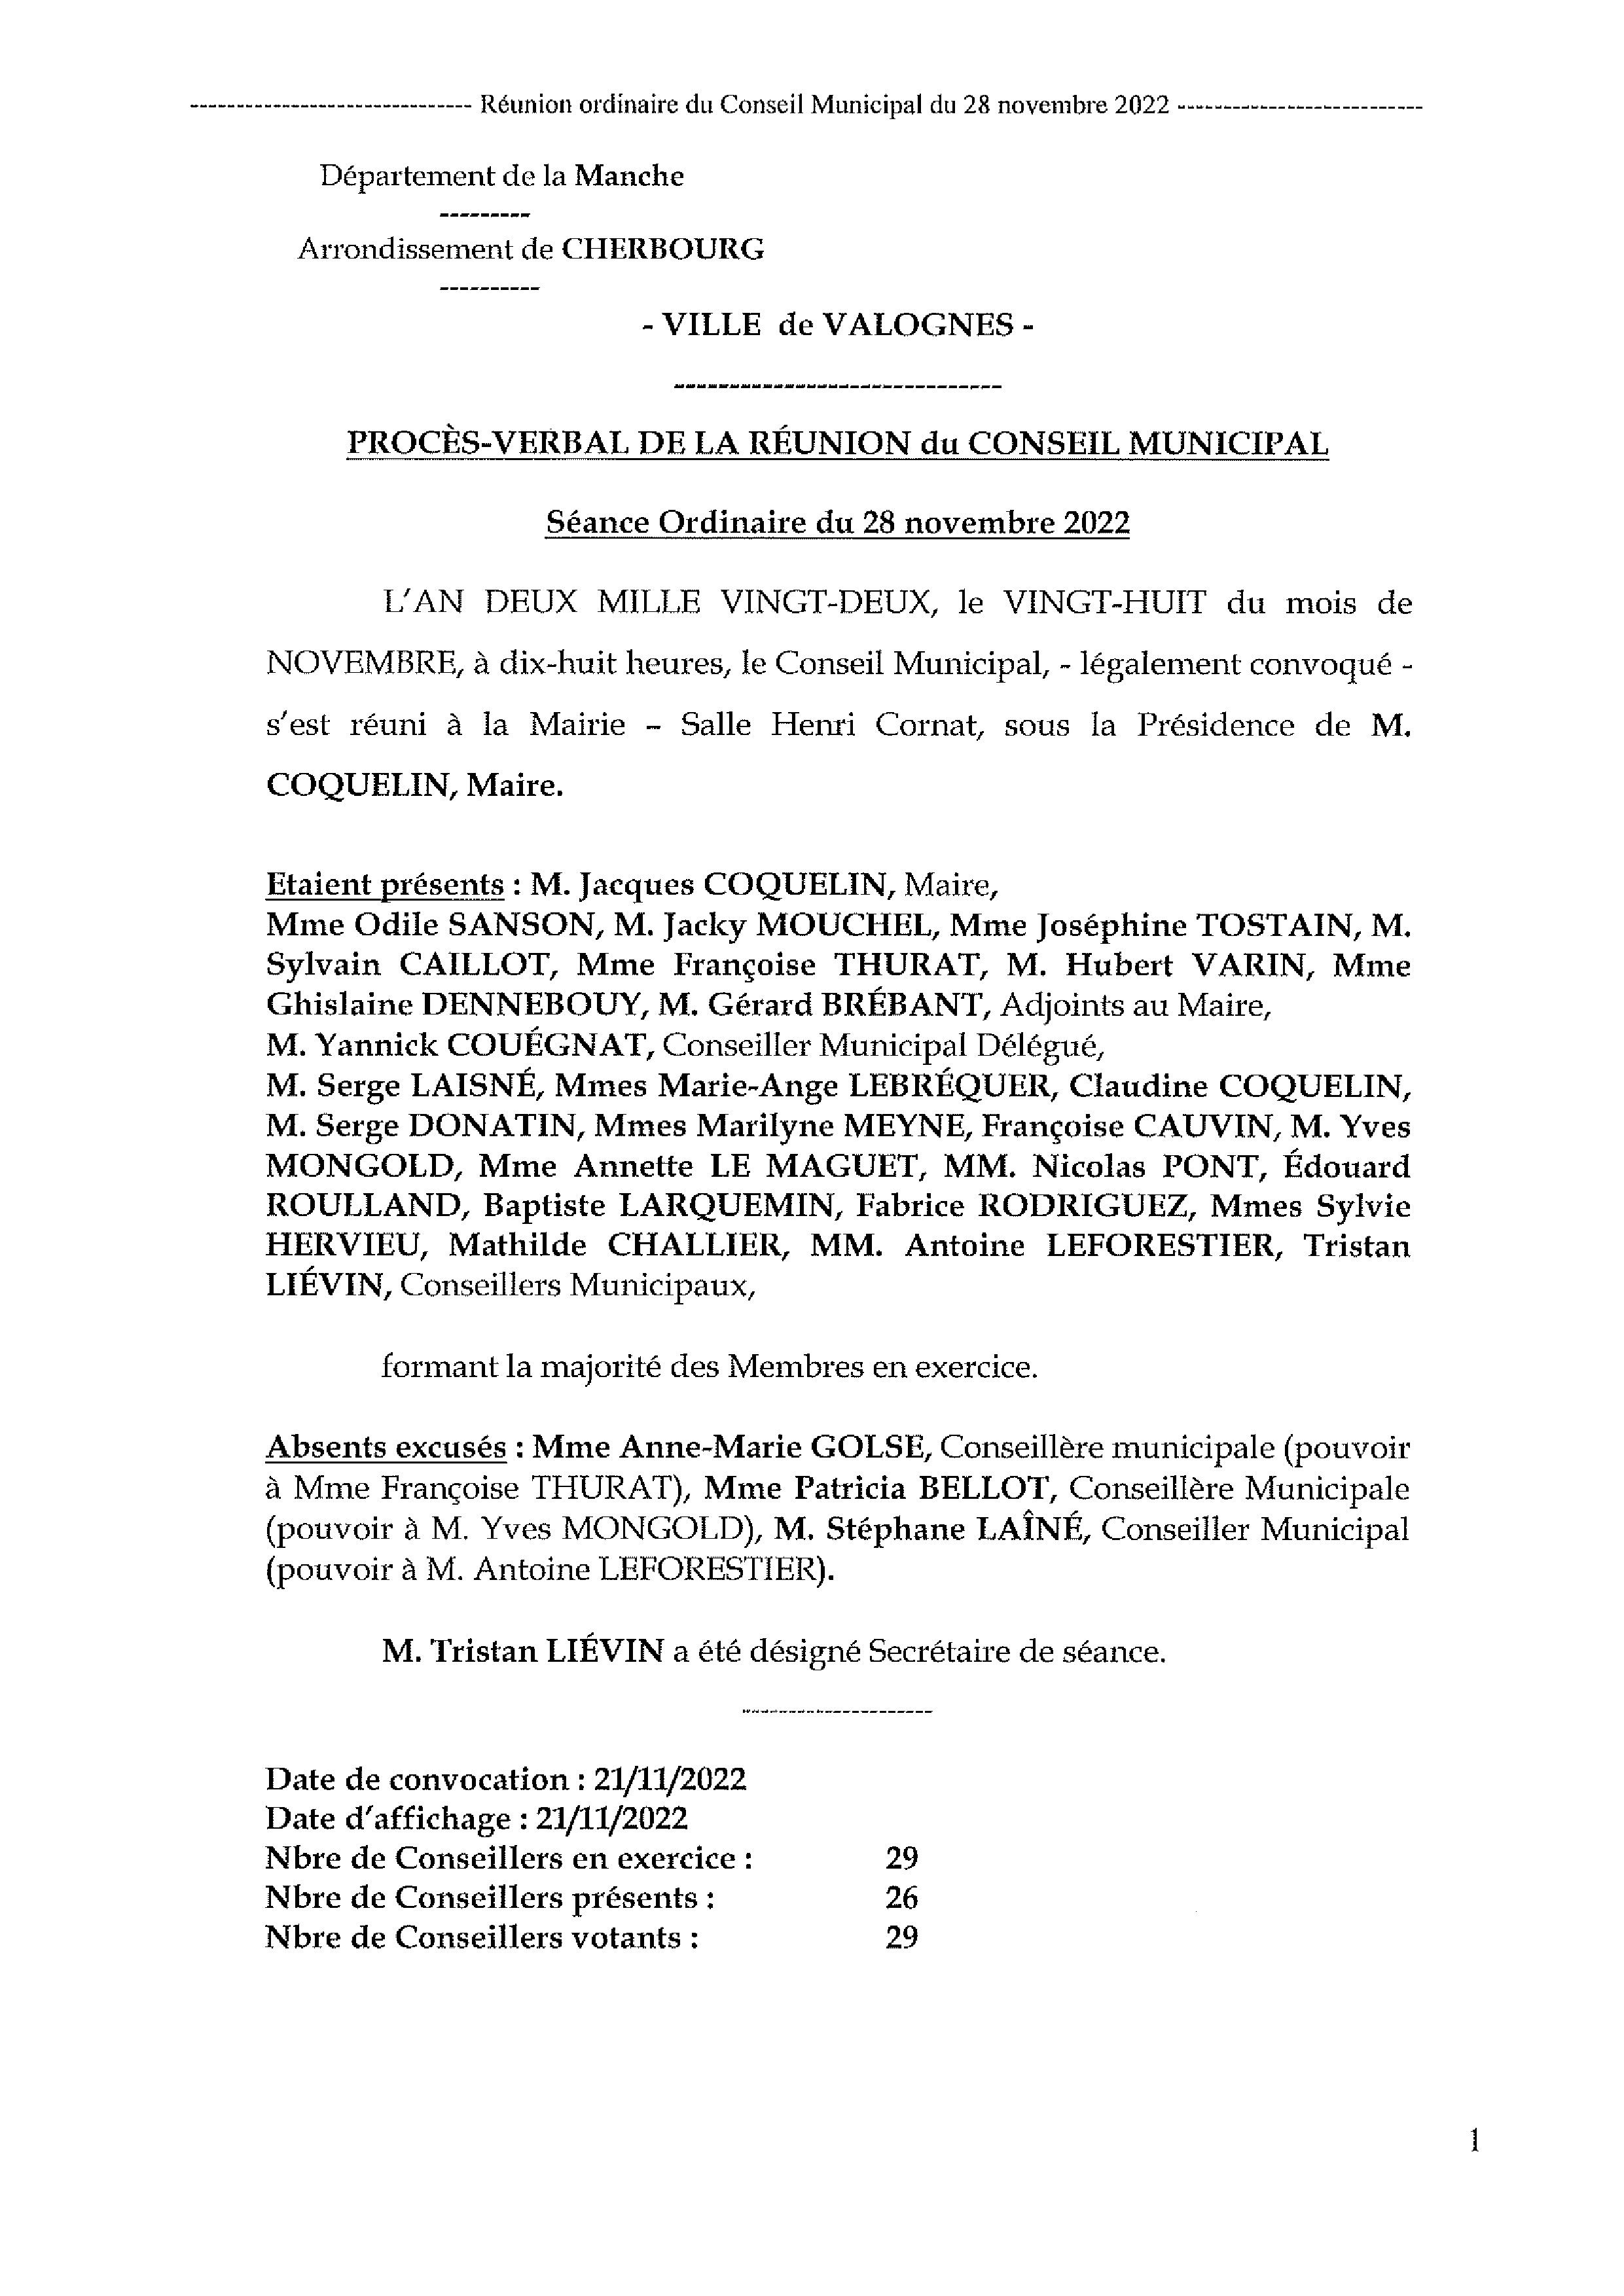 Procès-verbal séance du Conseil Municipal du 28 novembre 2022 - Procès-verbal de la réunion du Conseil Municipal du 28 novembre 2022, approuvé à l